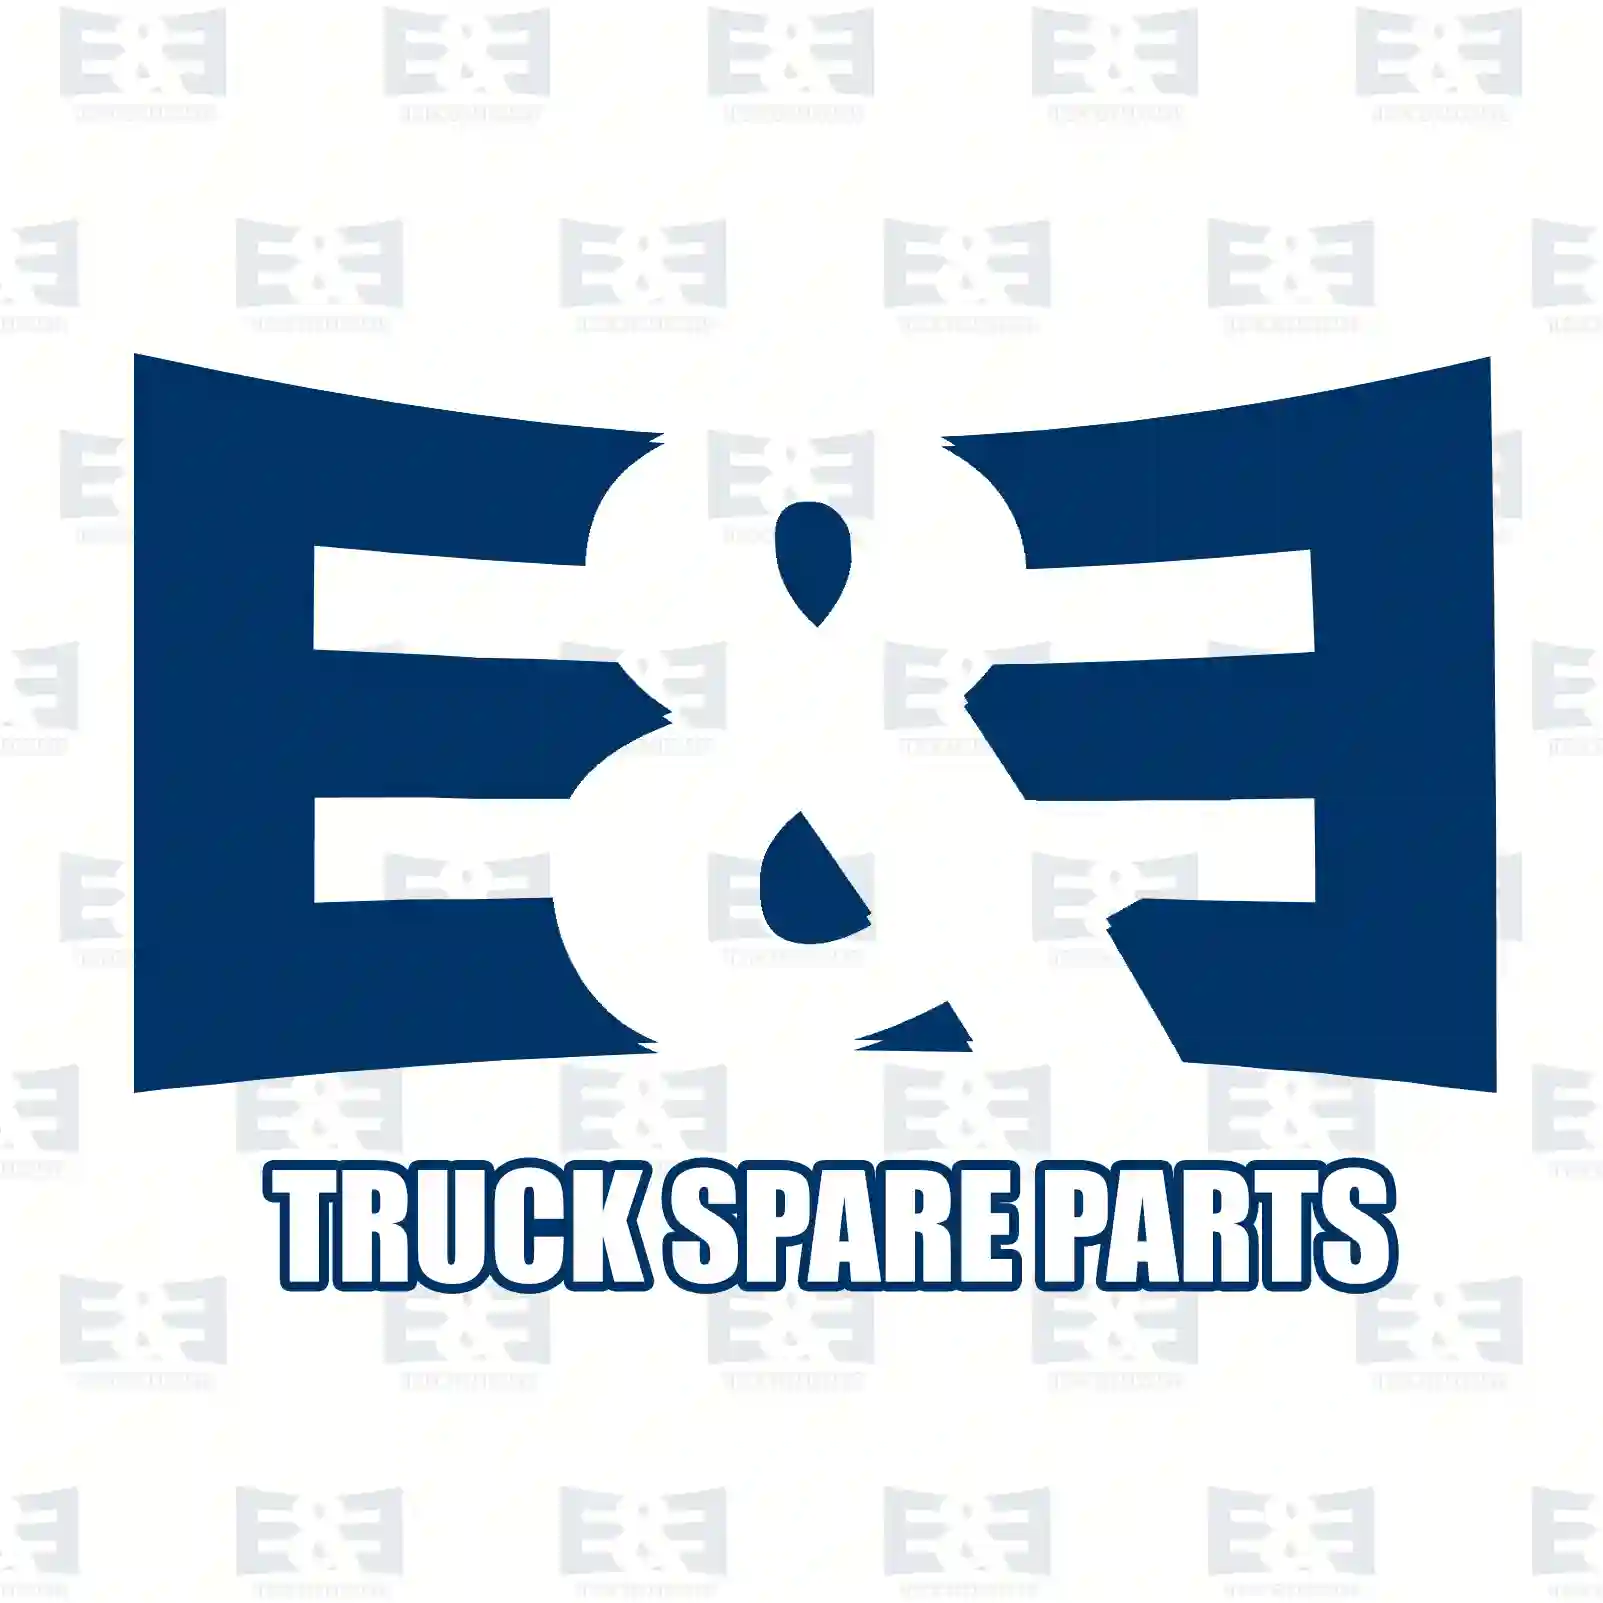 Oil seal, 2E2278005, 0239970547, 0259971247, ZG02739-0008, ||  2E2278005 E&E Truck Spare Parts | Truck Spare Parts, Auotomotive Spare Parts Oil seal, 2E2278005, 0239970547, 0259971247, ZG02739-0008, ||  2E2278005 E&E Truck Spare Parts | Truck Spare Parts, Auotomotive Spare Parts